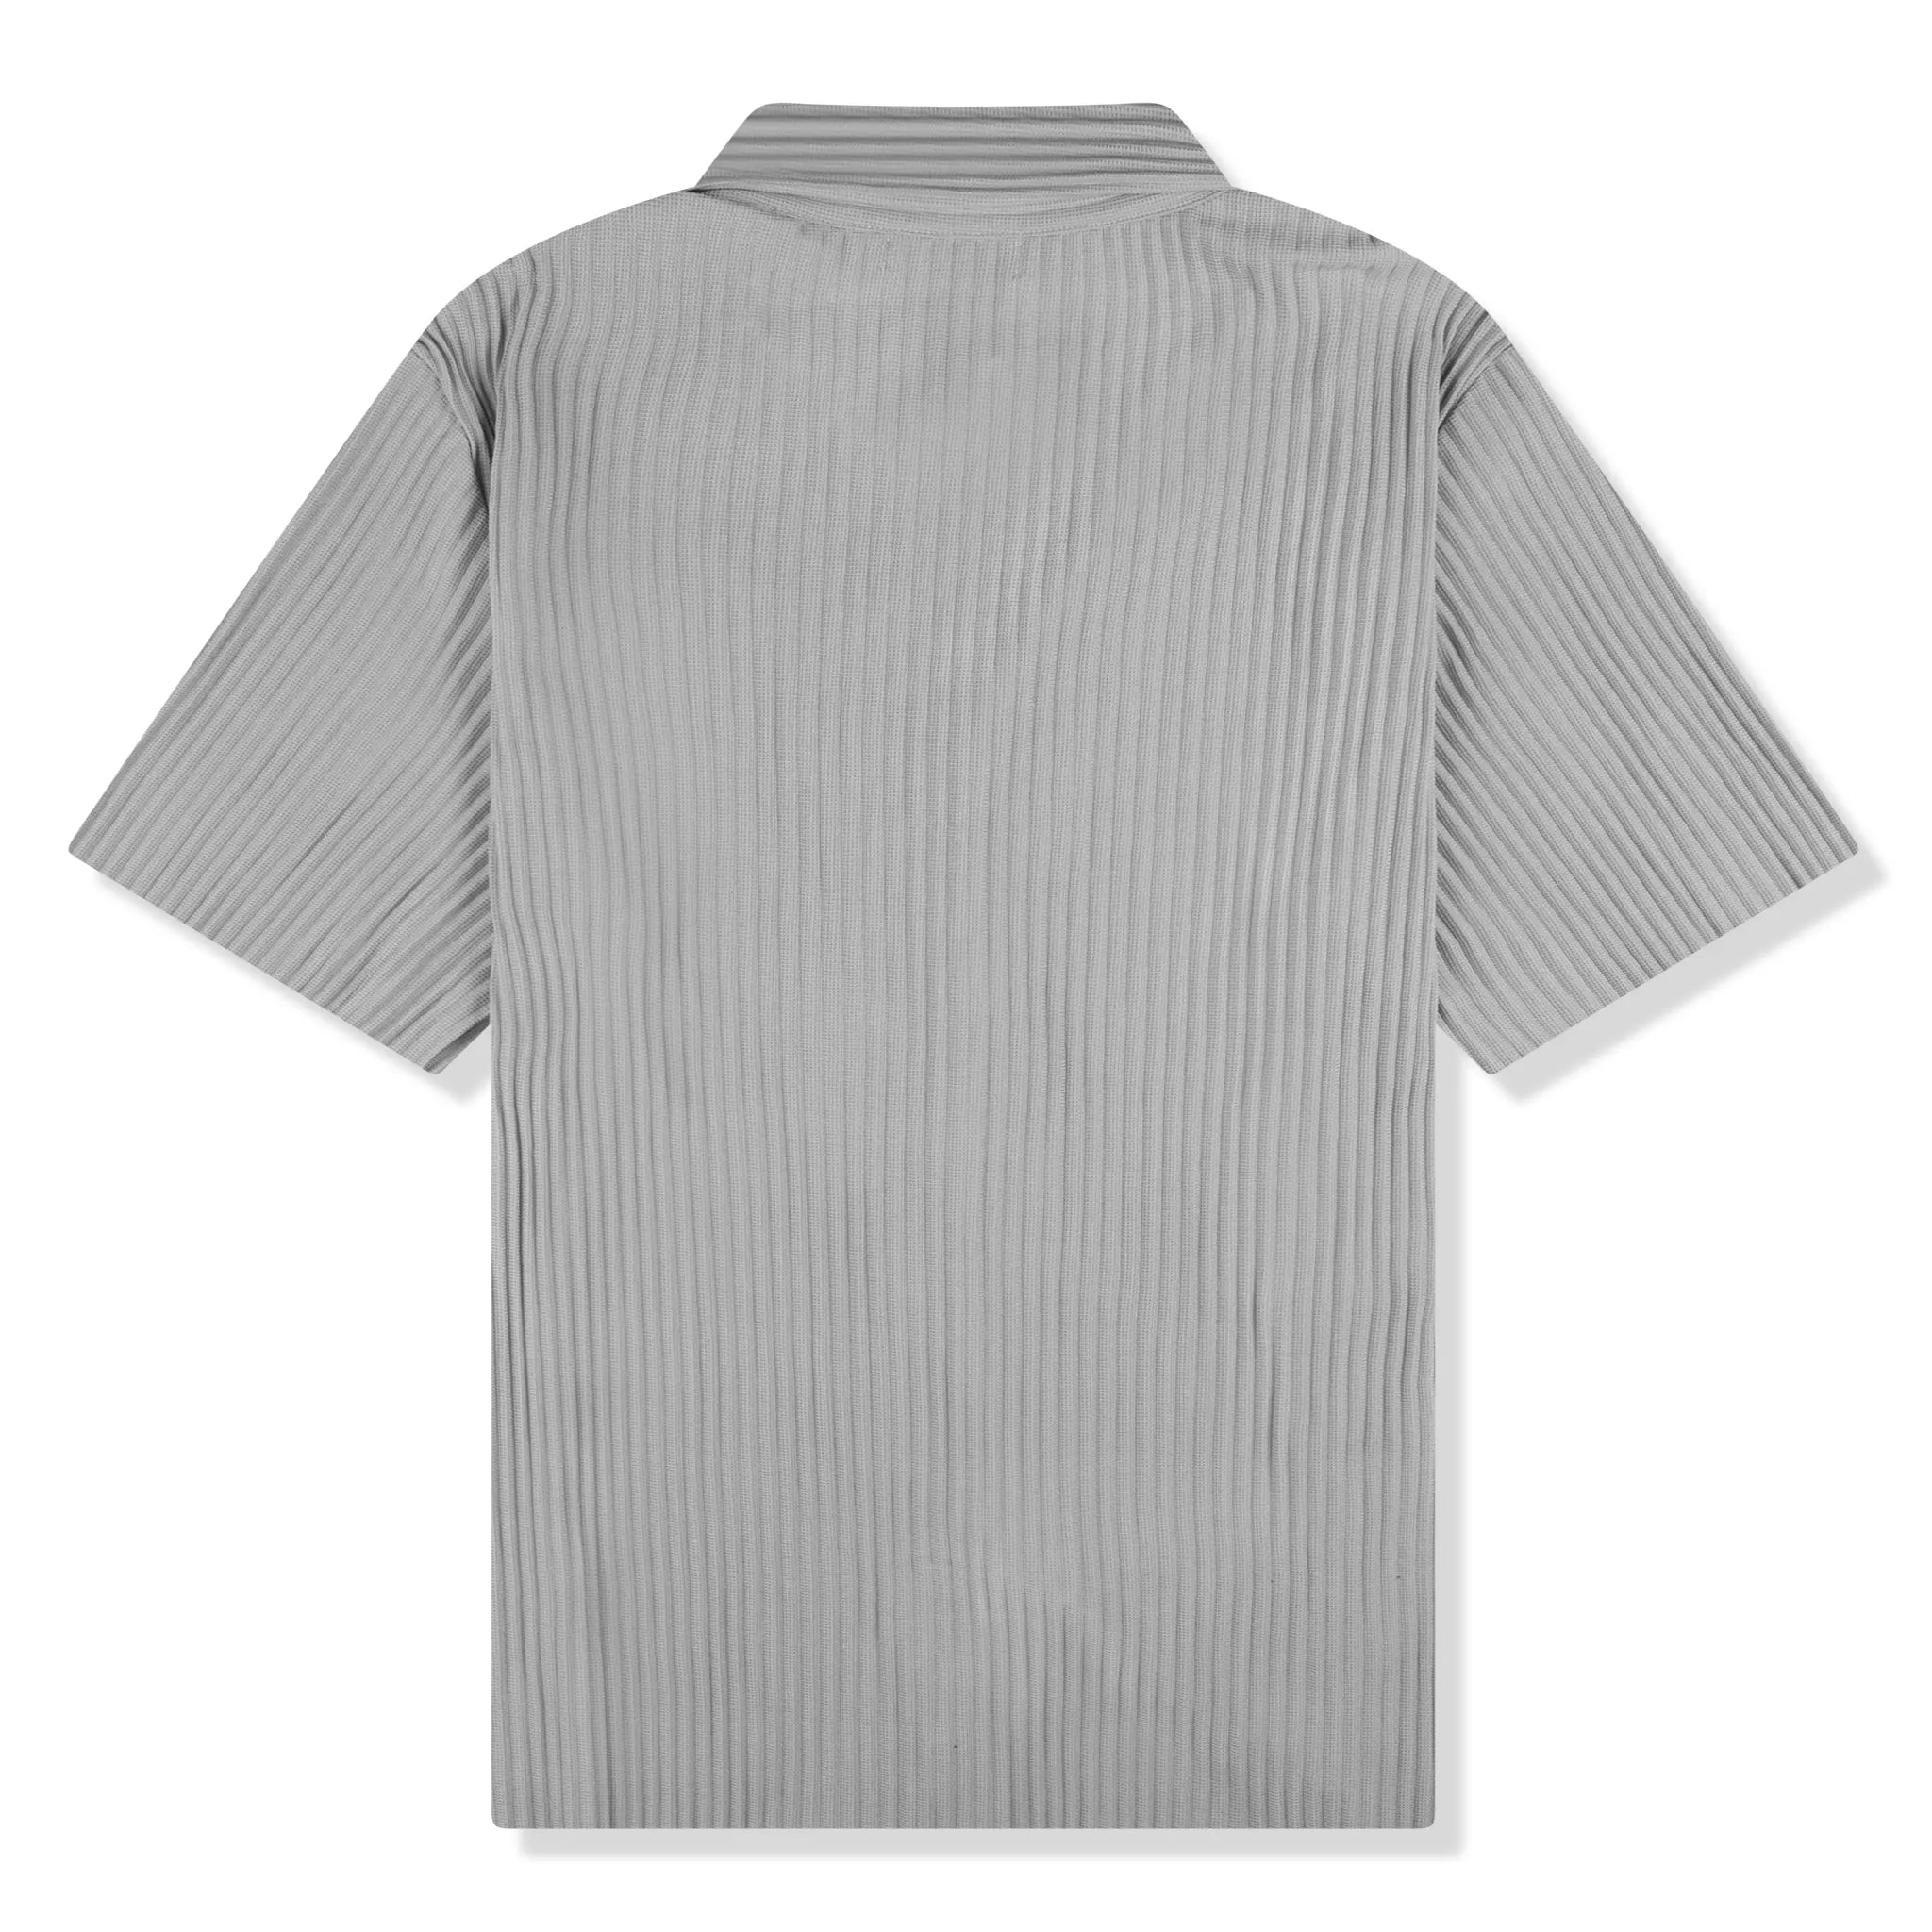 Back view of Belier Pleated Short Sleeve Black Resort Shirt BM-073